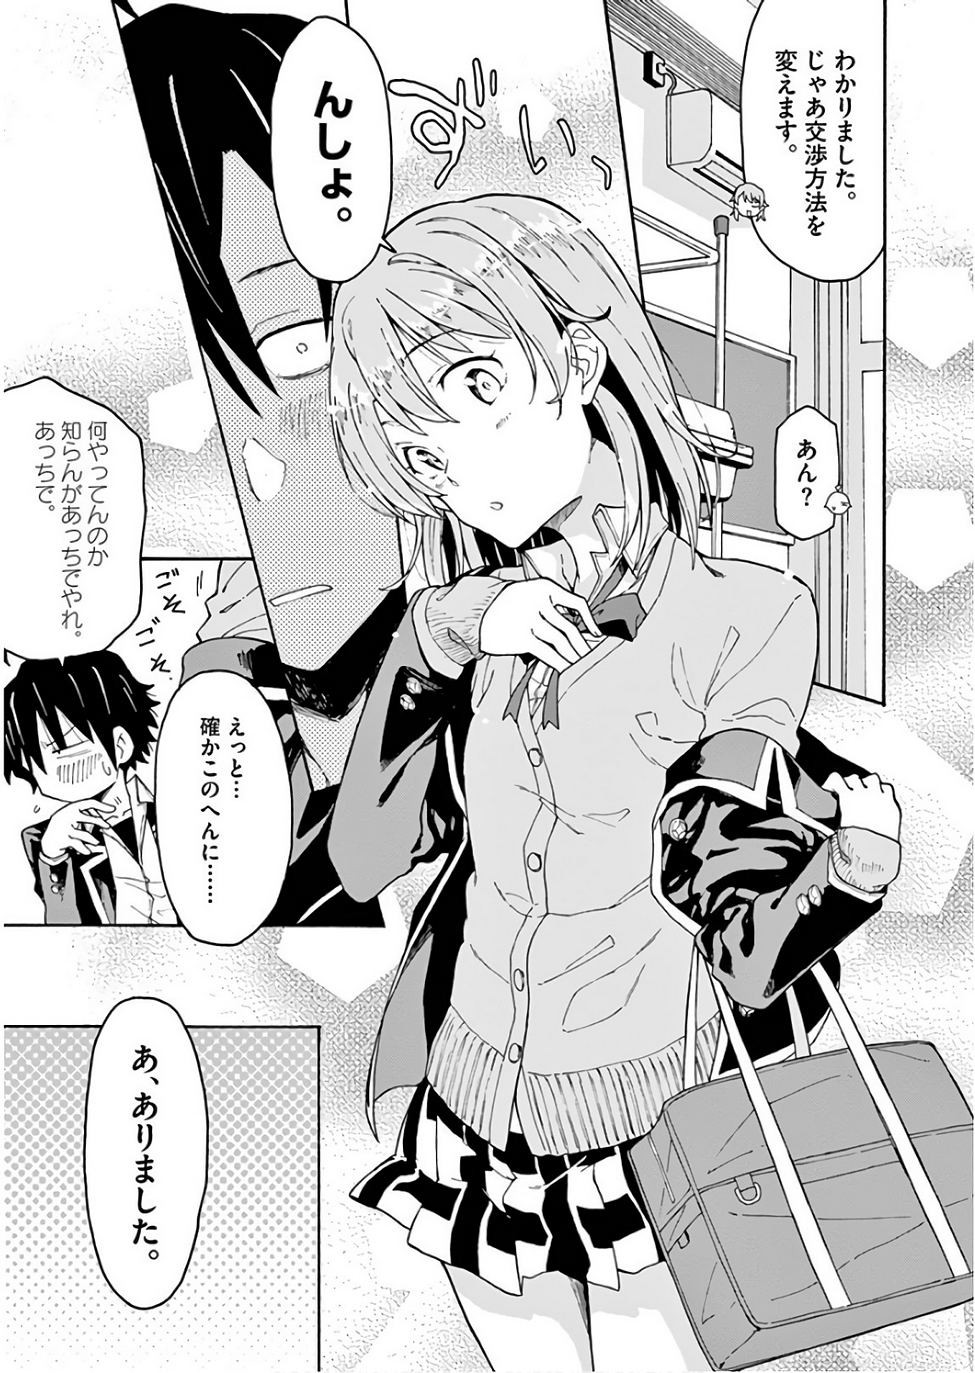 Yahari Ore no Seishun Rabukome wa Machigatte Iru. @ Comic - Chapter 71 - Page 35